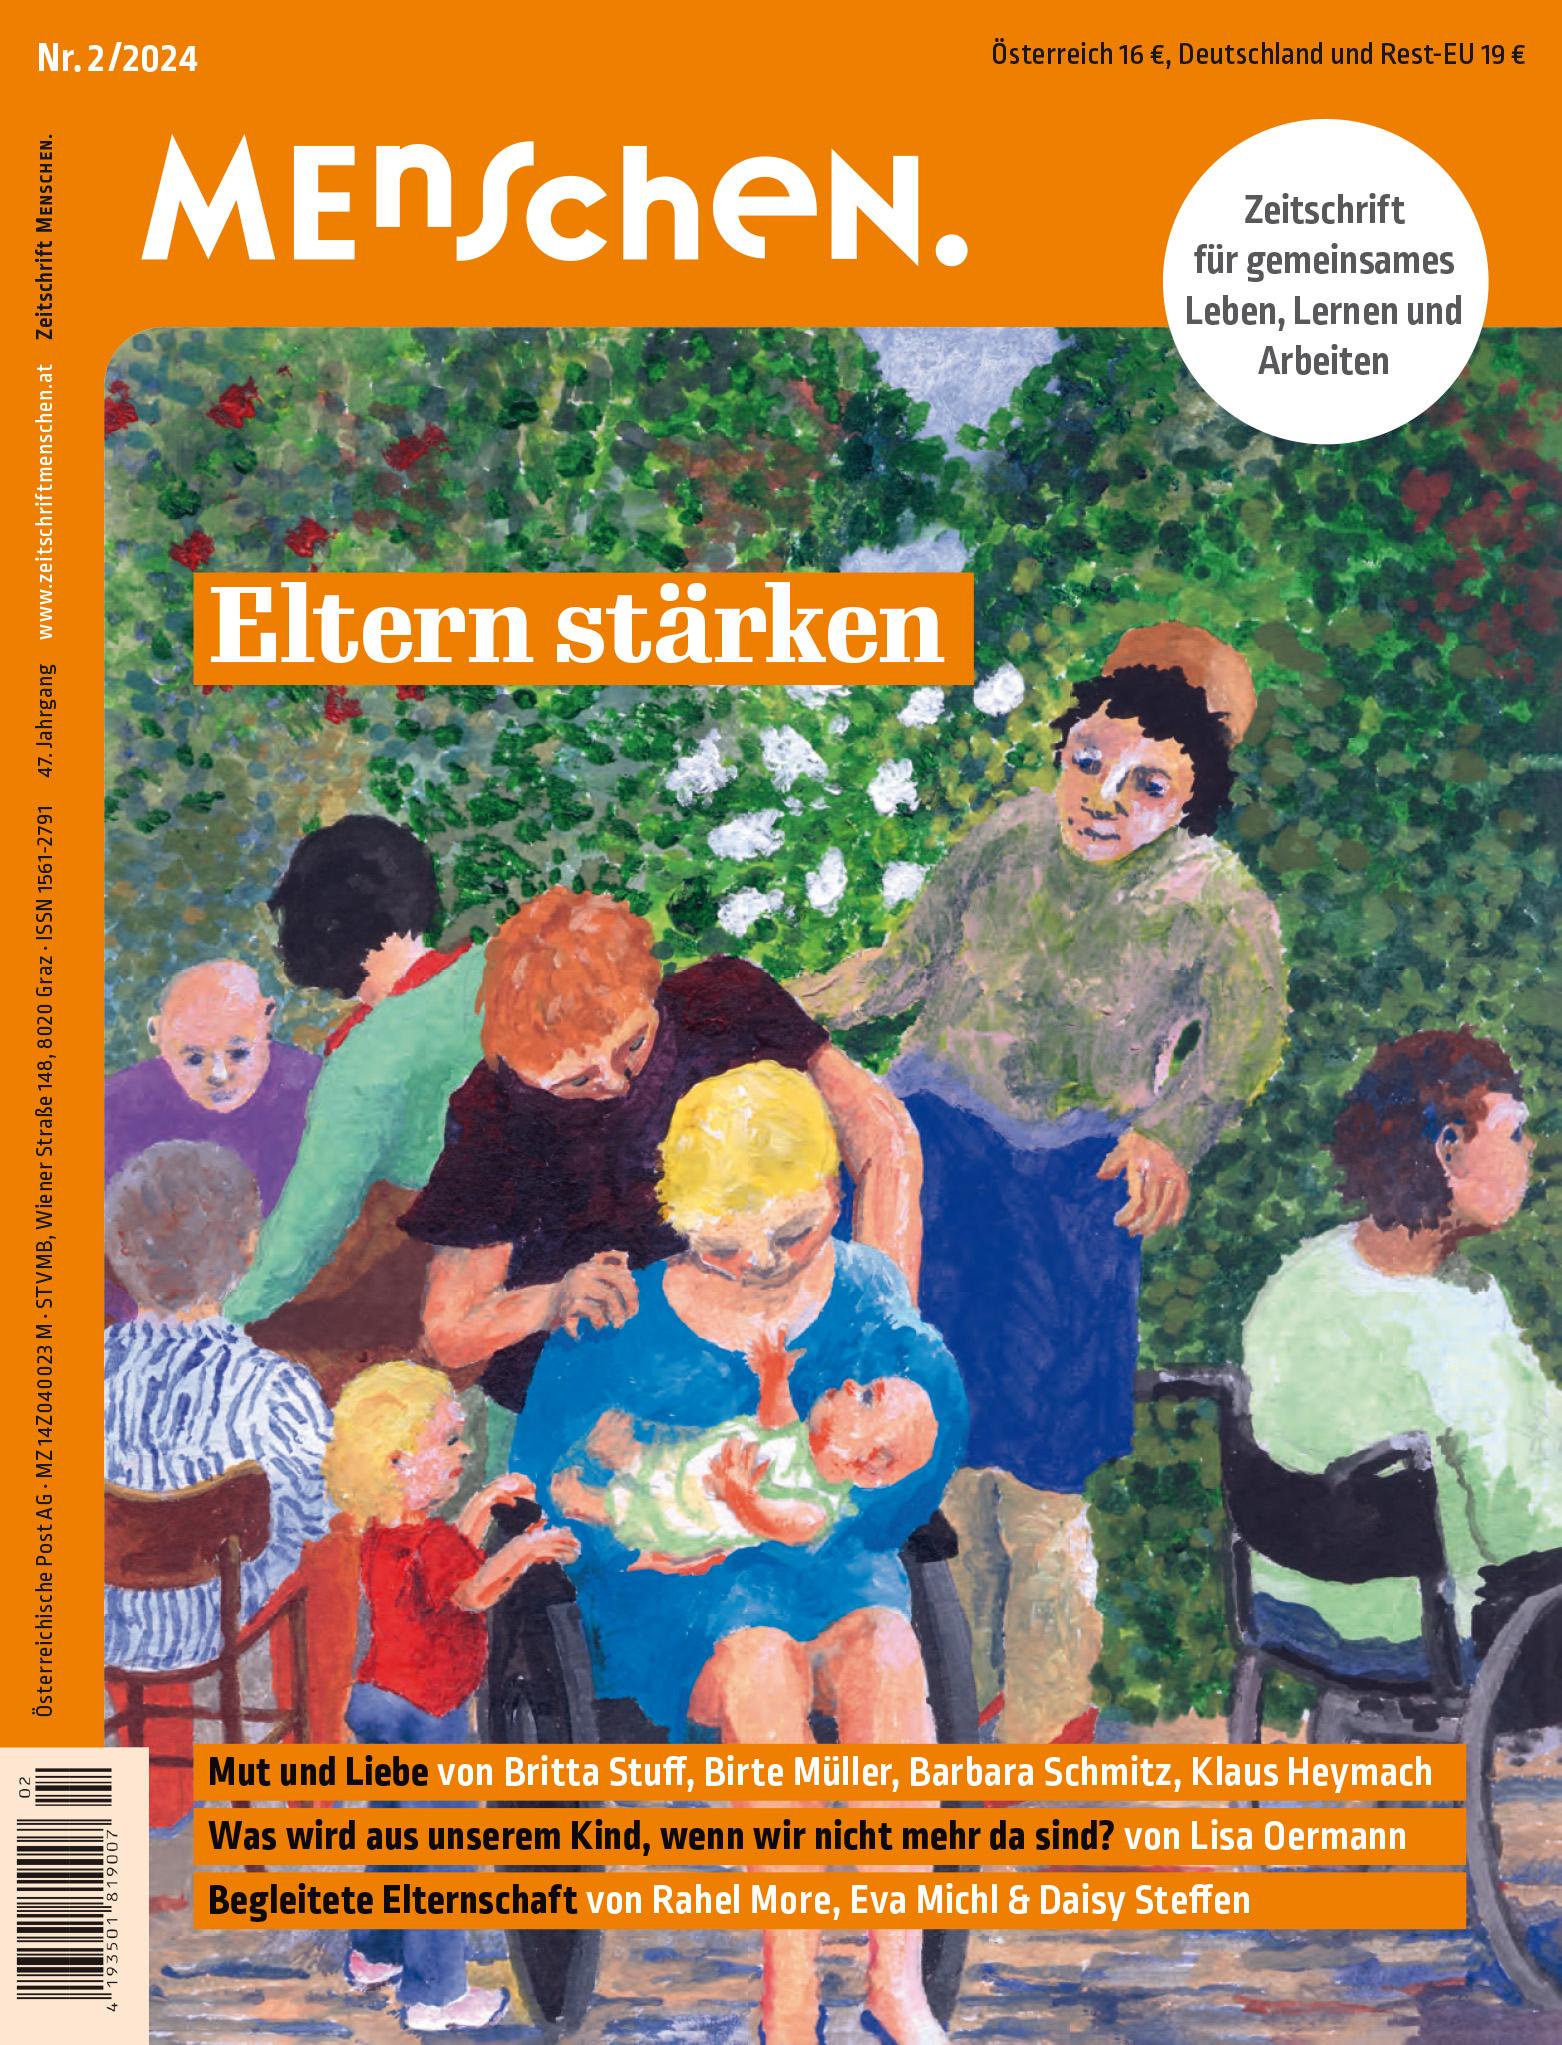 Titelbild der Zeitschrift BEHINDERTE MENSCHEN, Ausgabe 2/2024 "Eltern stärken"